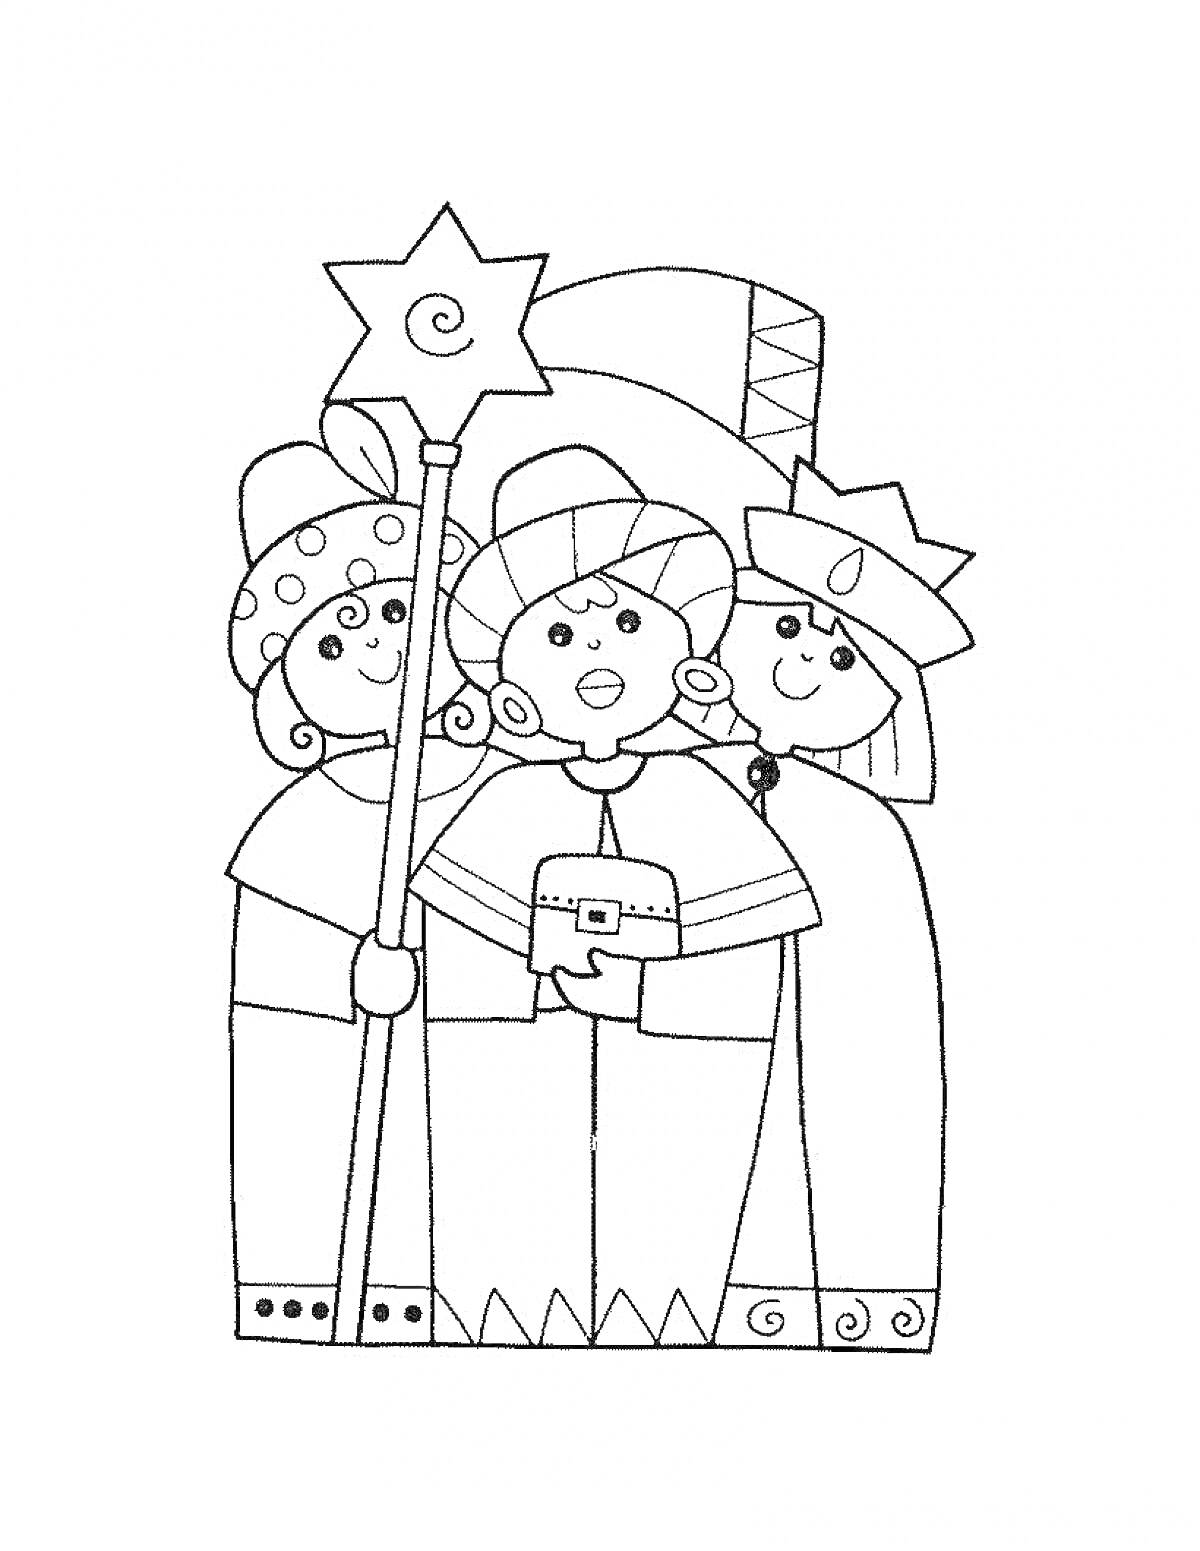 Раскраска Три человека с музыкальными инструментами и звездой на палке